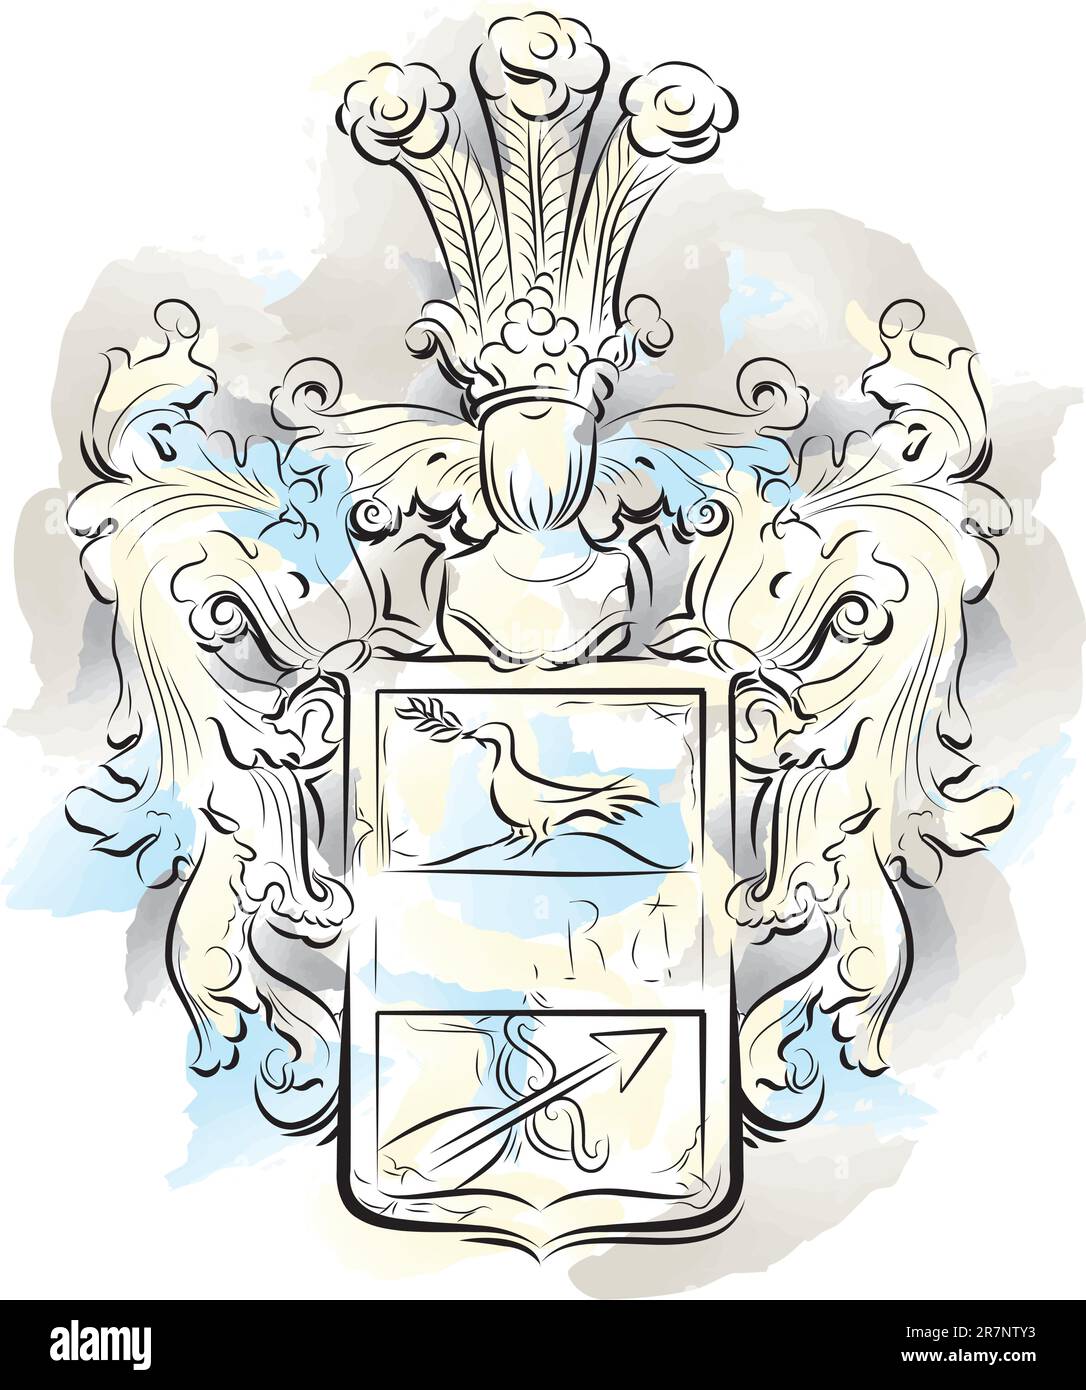 Emblème de couleur vintage sur une pierre, Kotor, Monténégro. Illustration vectorielle Illustration de Vecteur